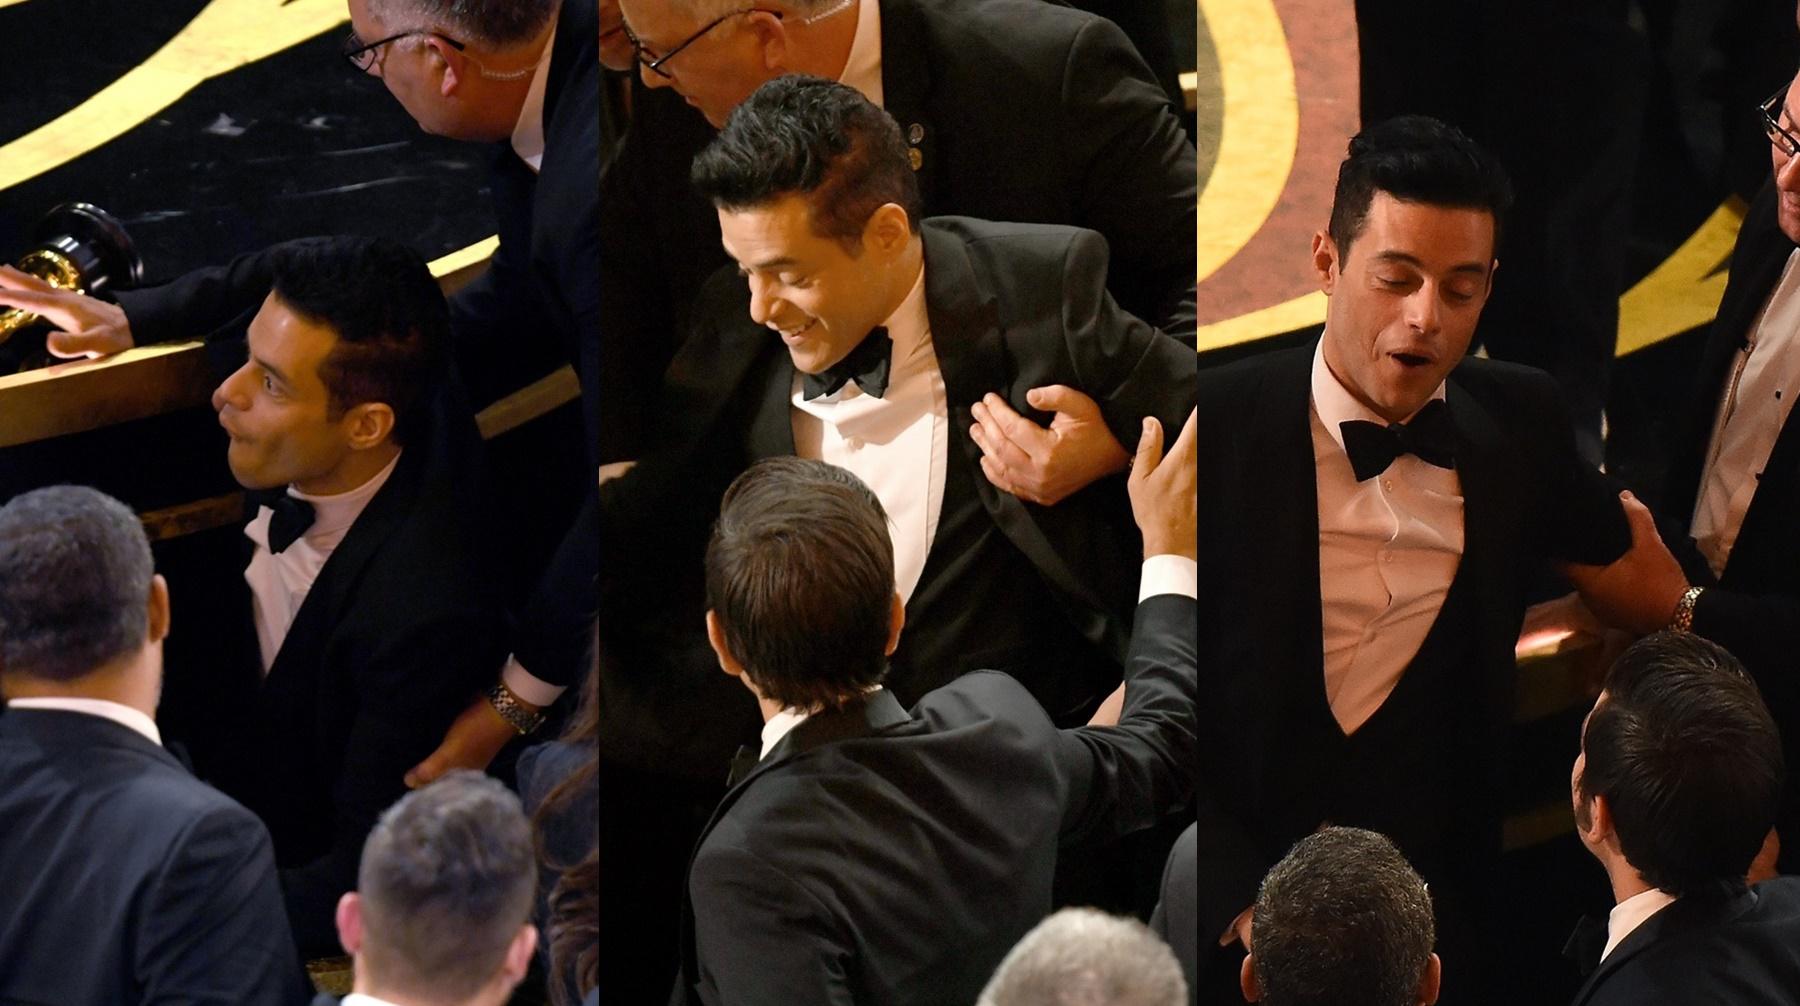 Así fue la caída de Rami Malek durante la gala del Oscar 2019. Fotos: AFP.